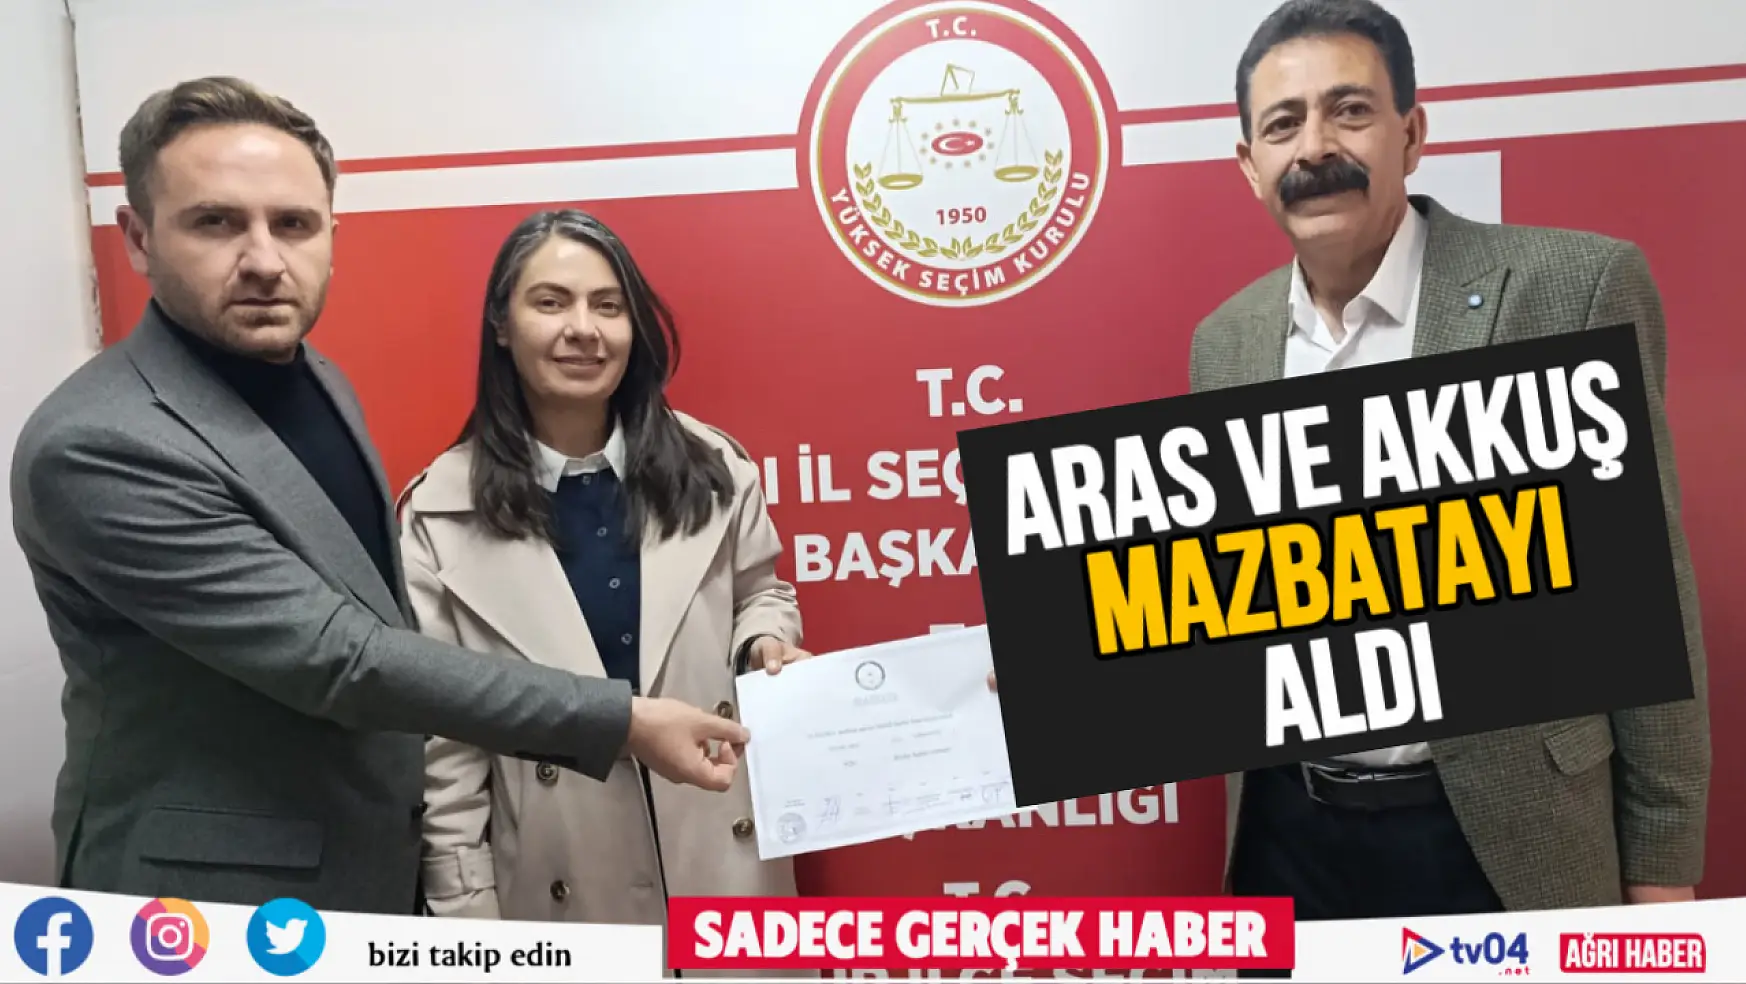 Hazal Aras ve Mehmet Akkuş mazbatayı aldı